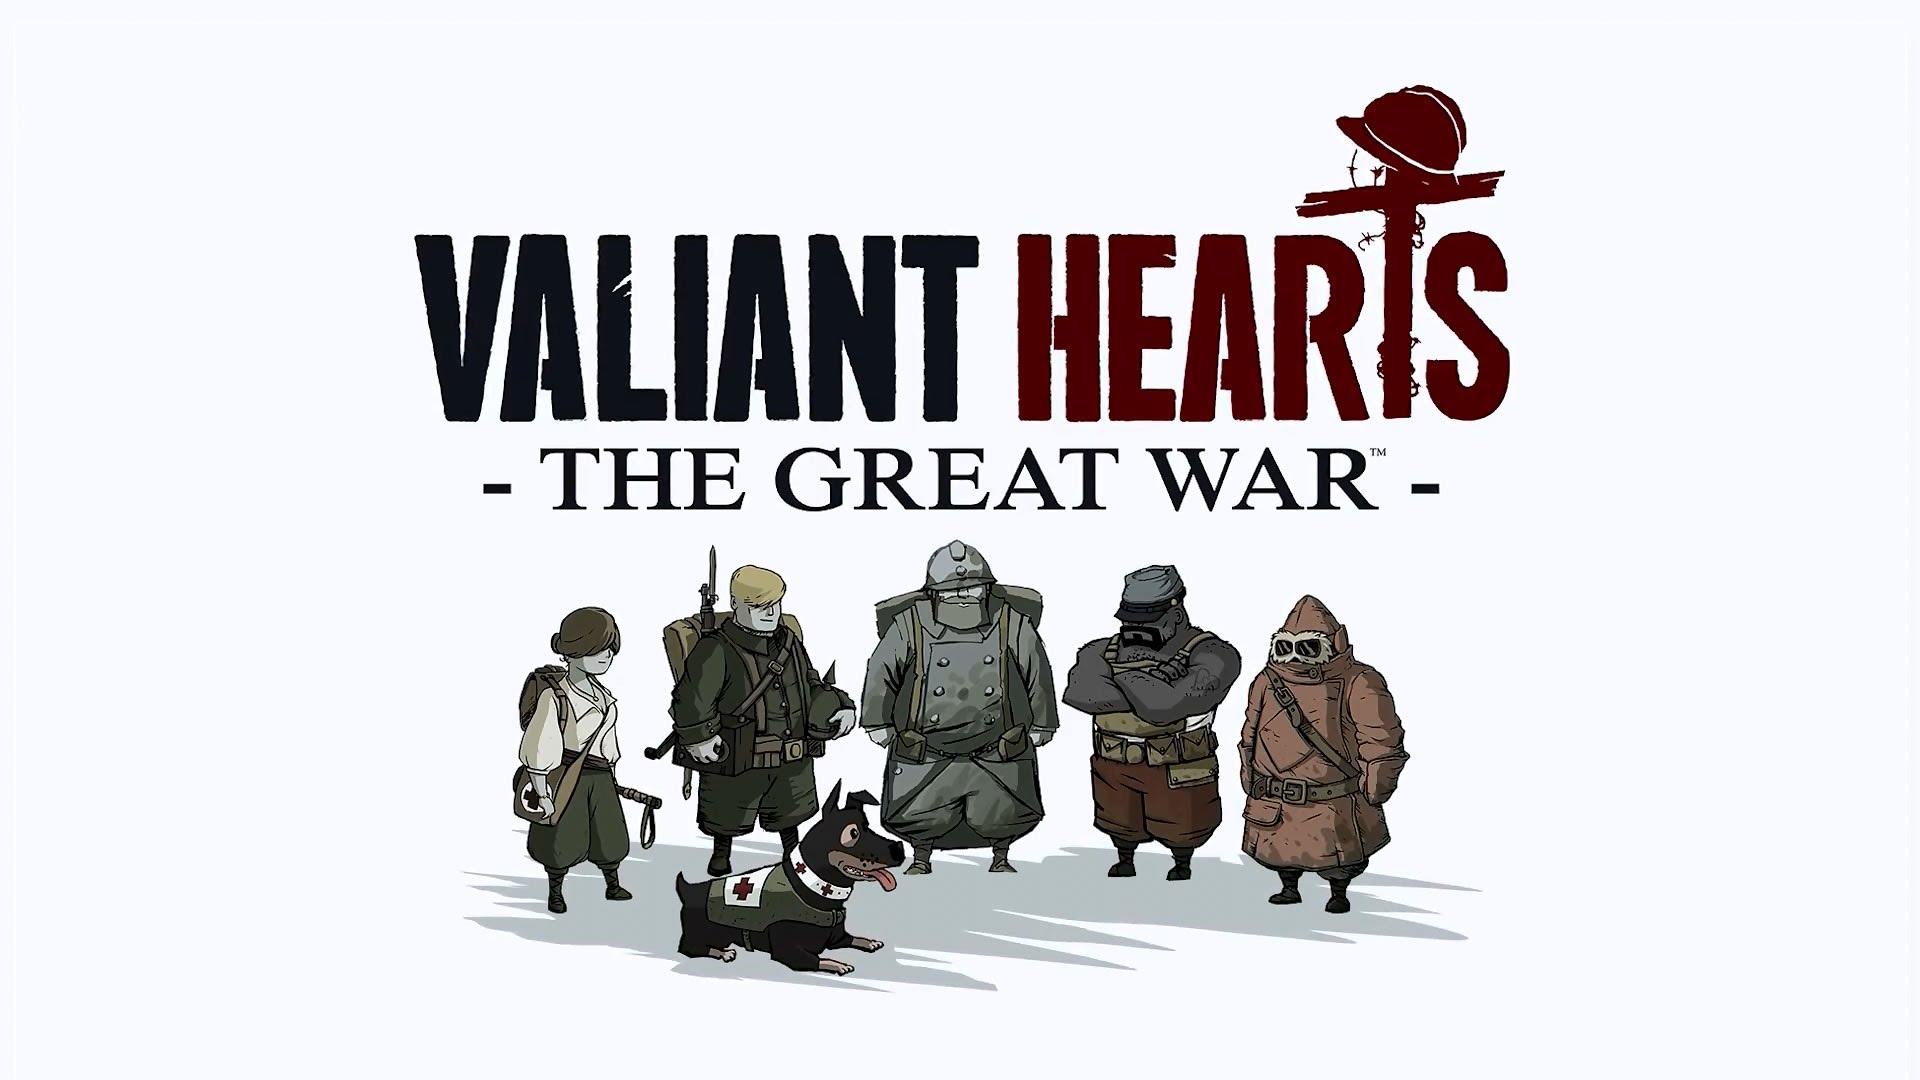 Descargar fondos de escritorio de Valiant Hearts: The Great War HD